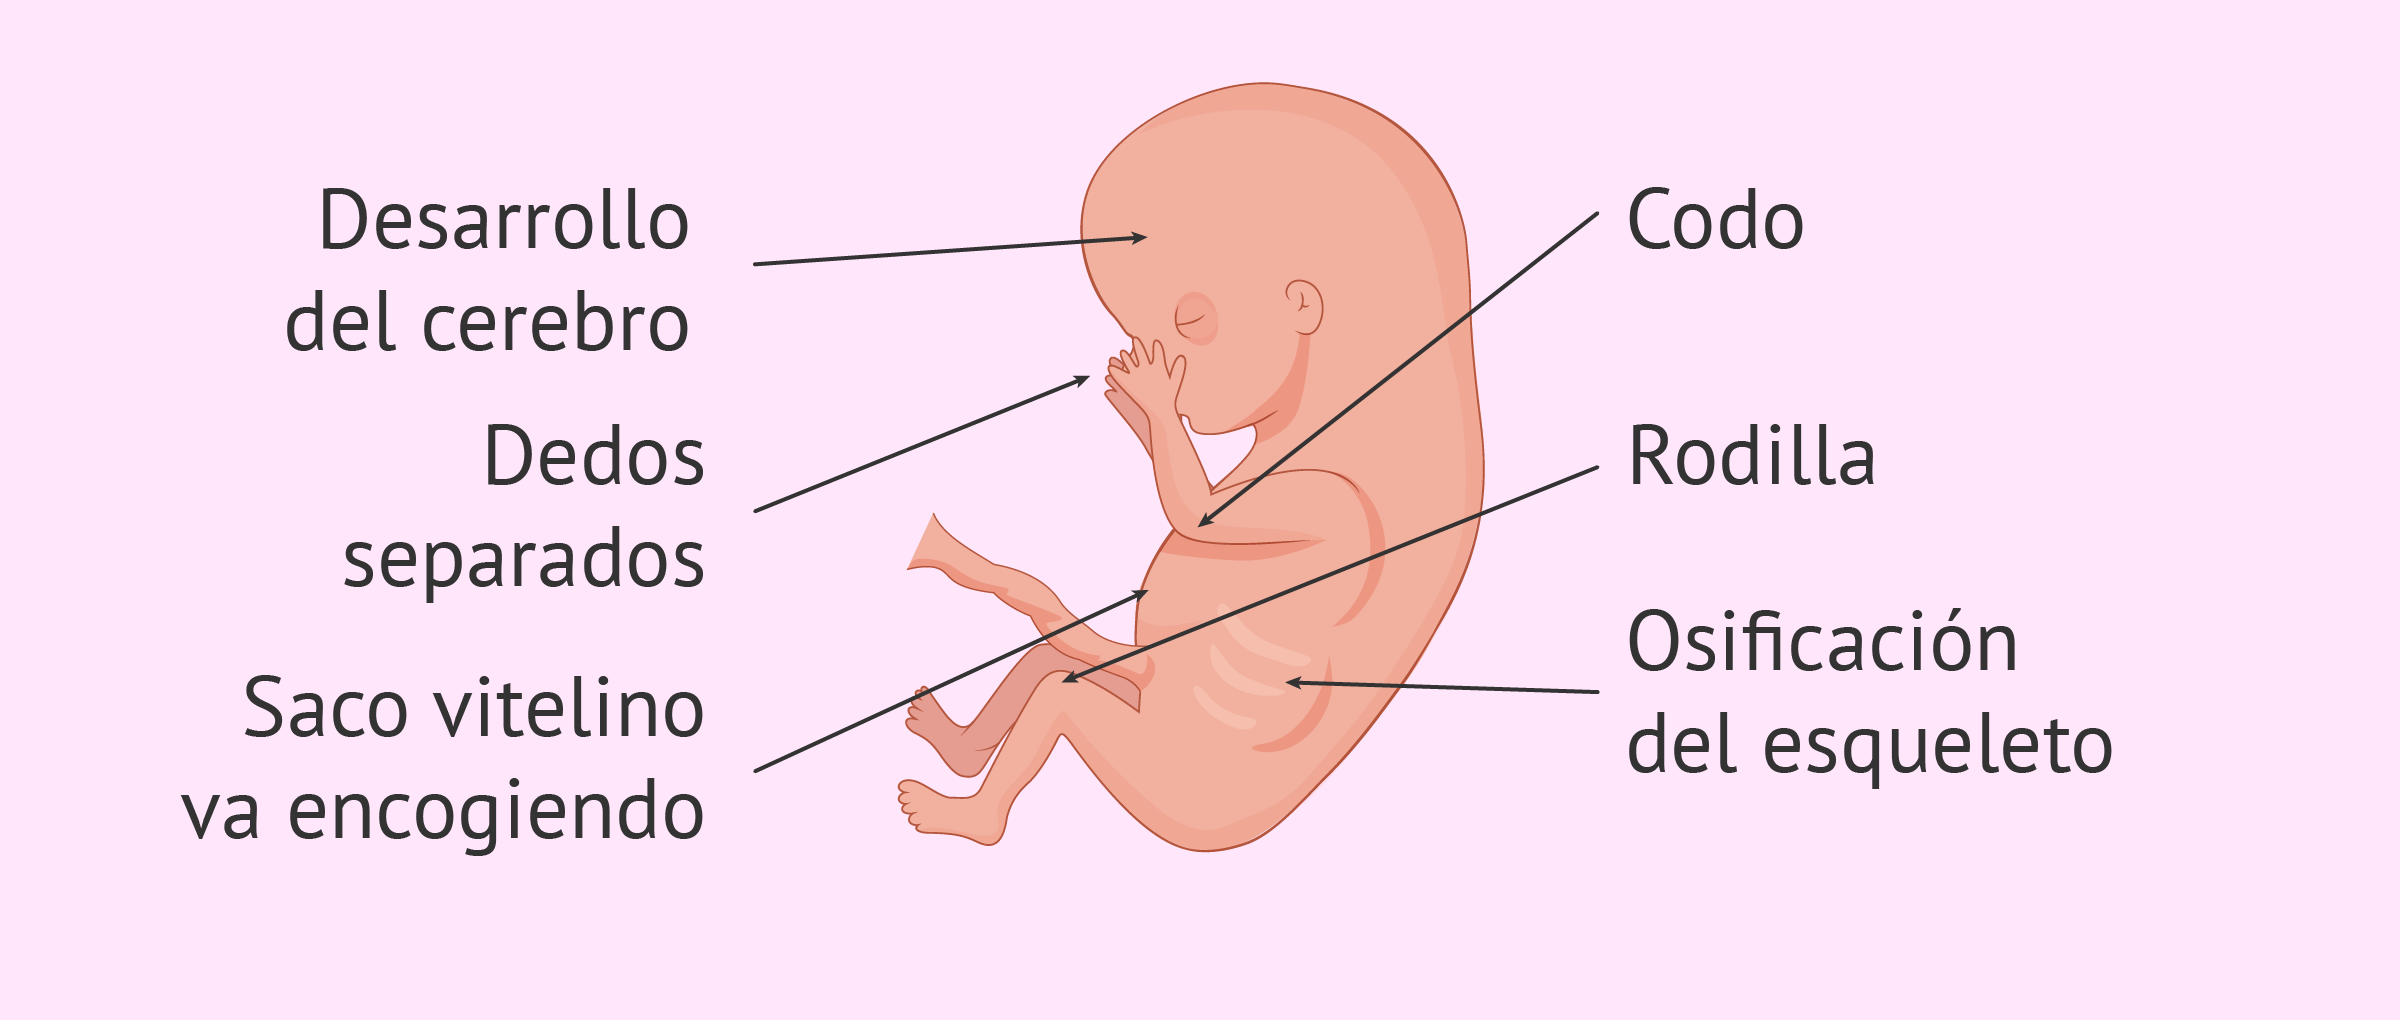 Semana 10 de embarazo: el feto empieza a moverse